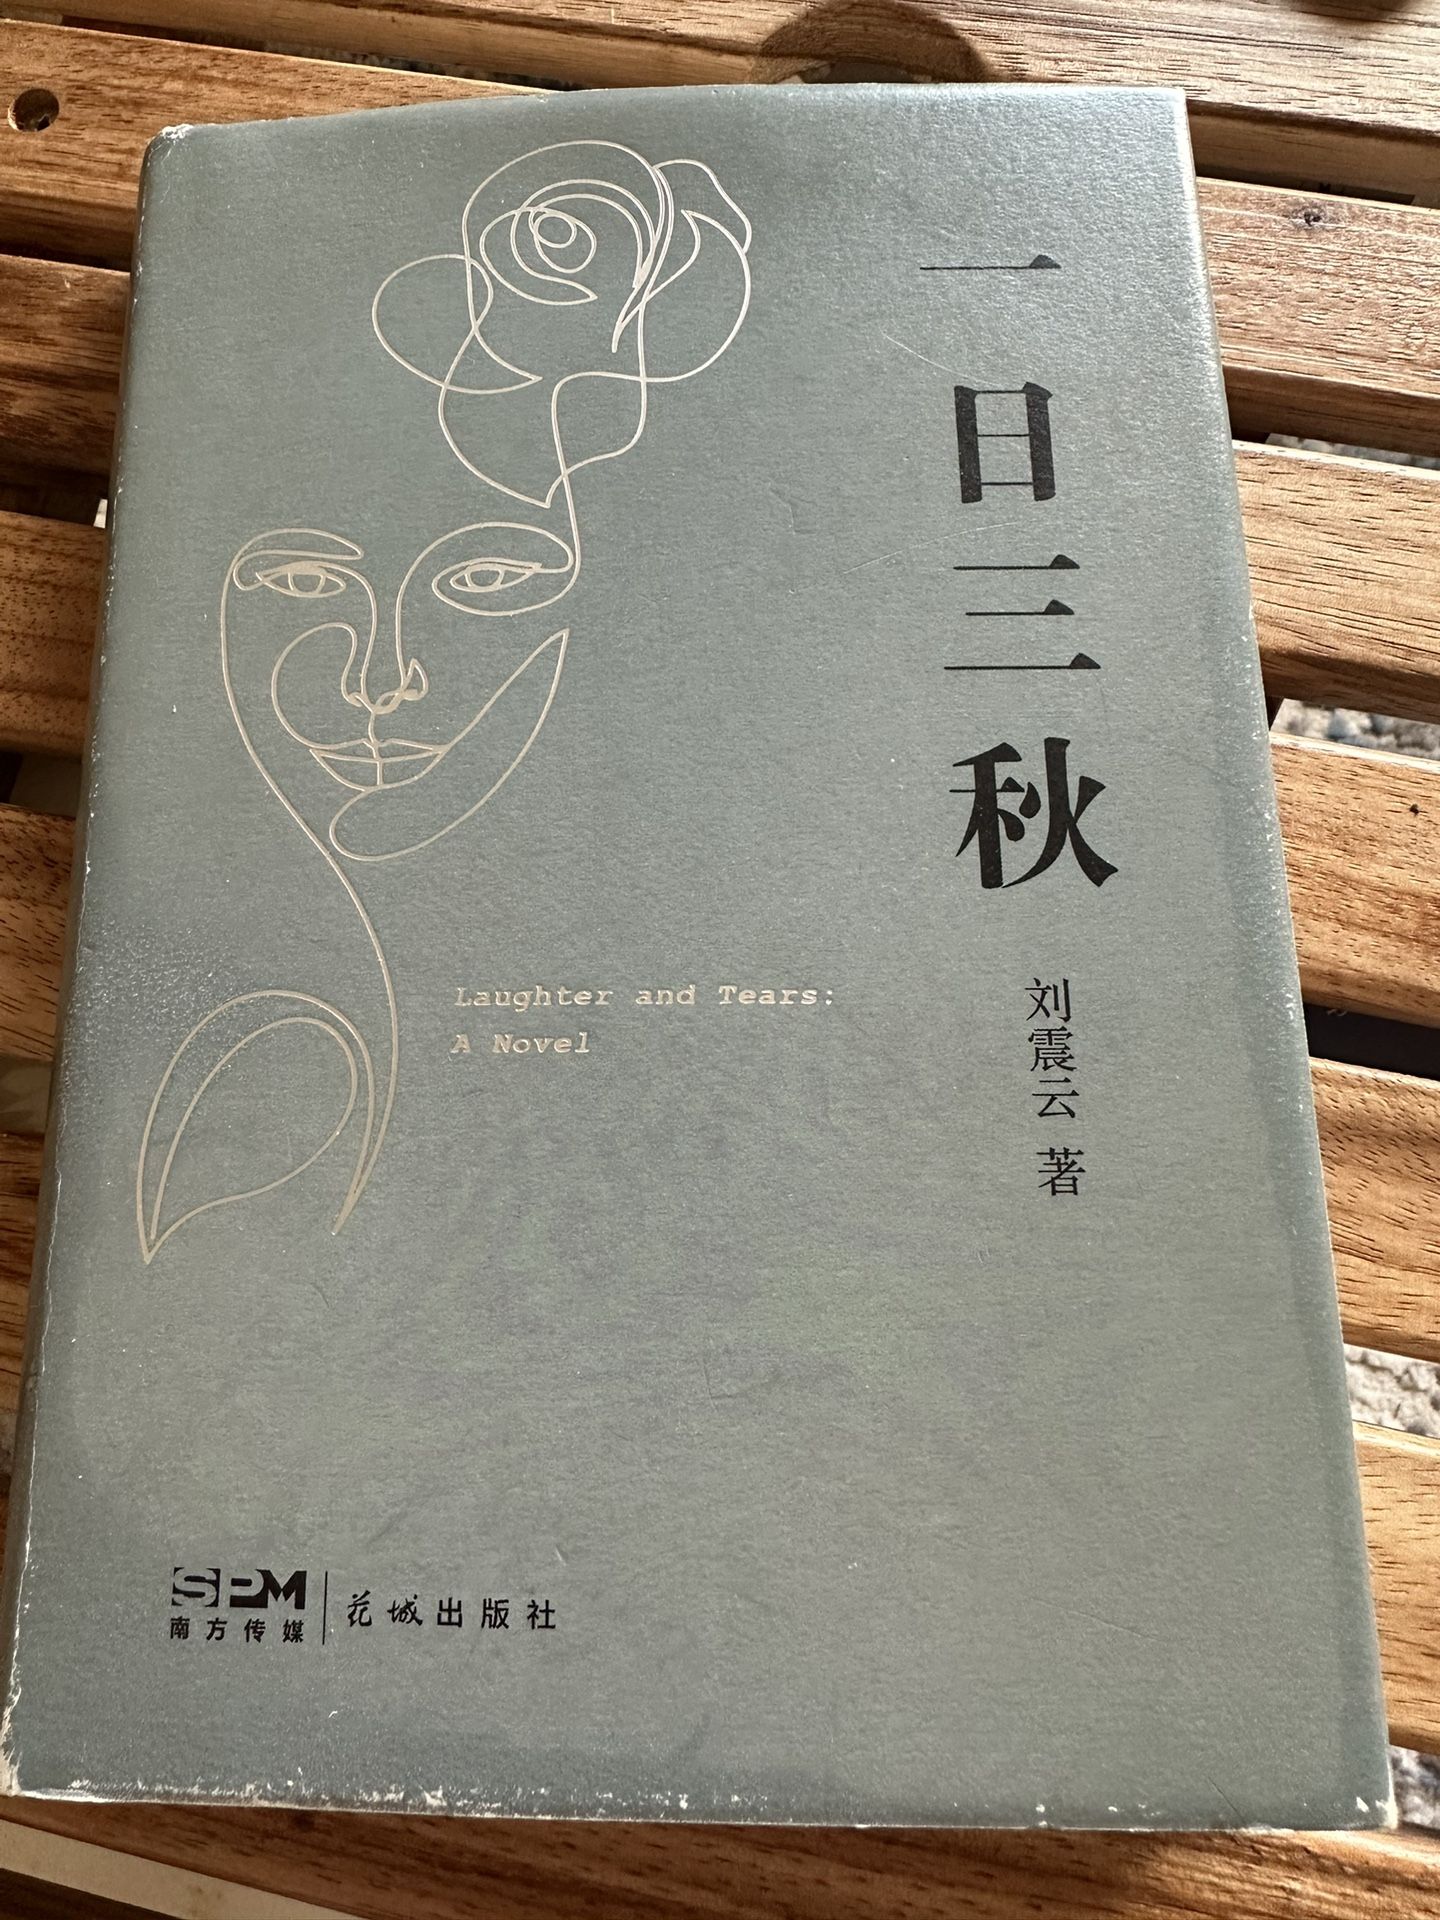 中文书 一日三秋 刘震云著 Chinese Book